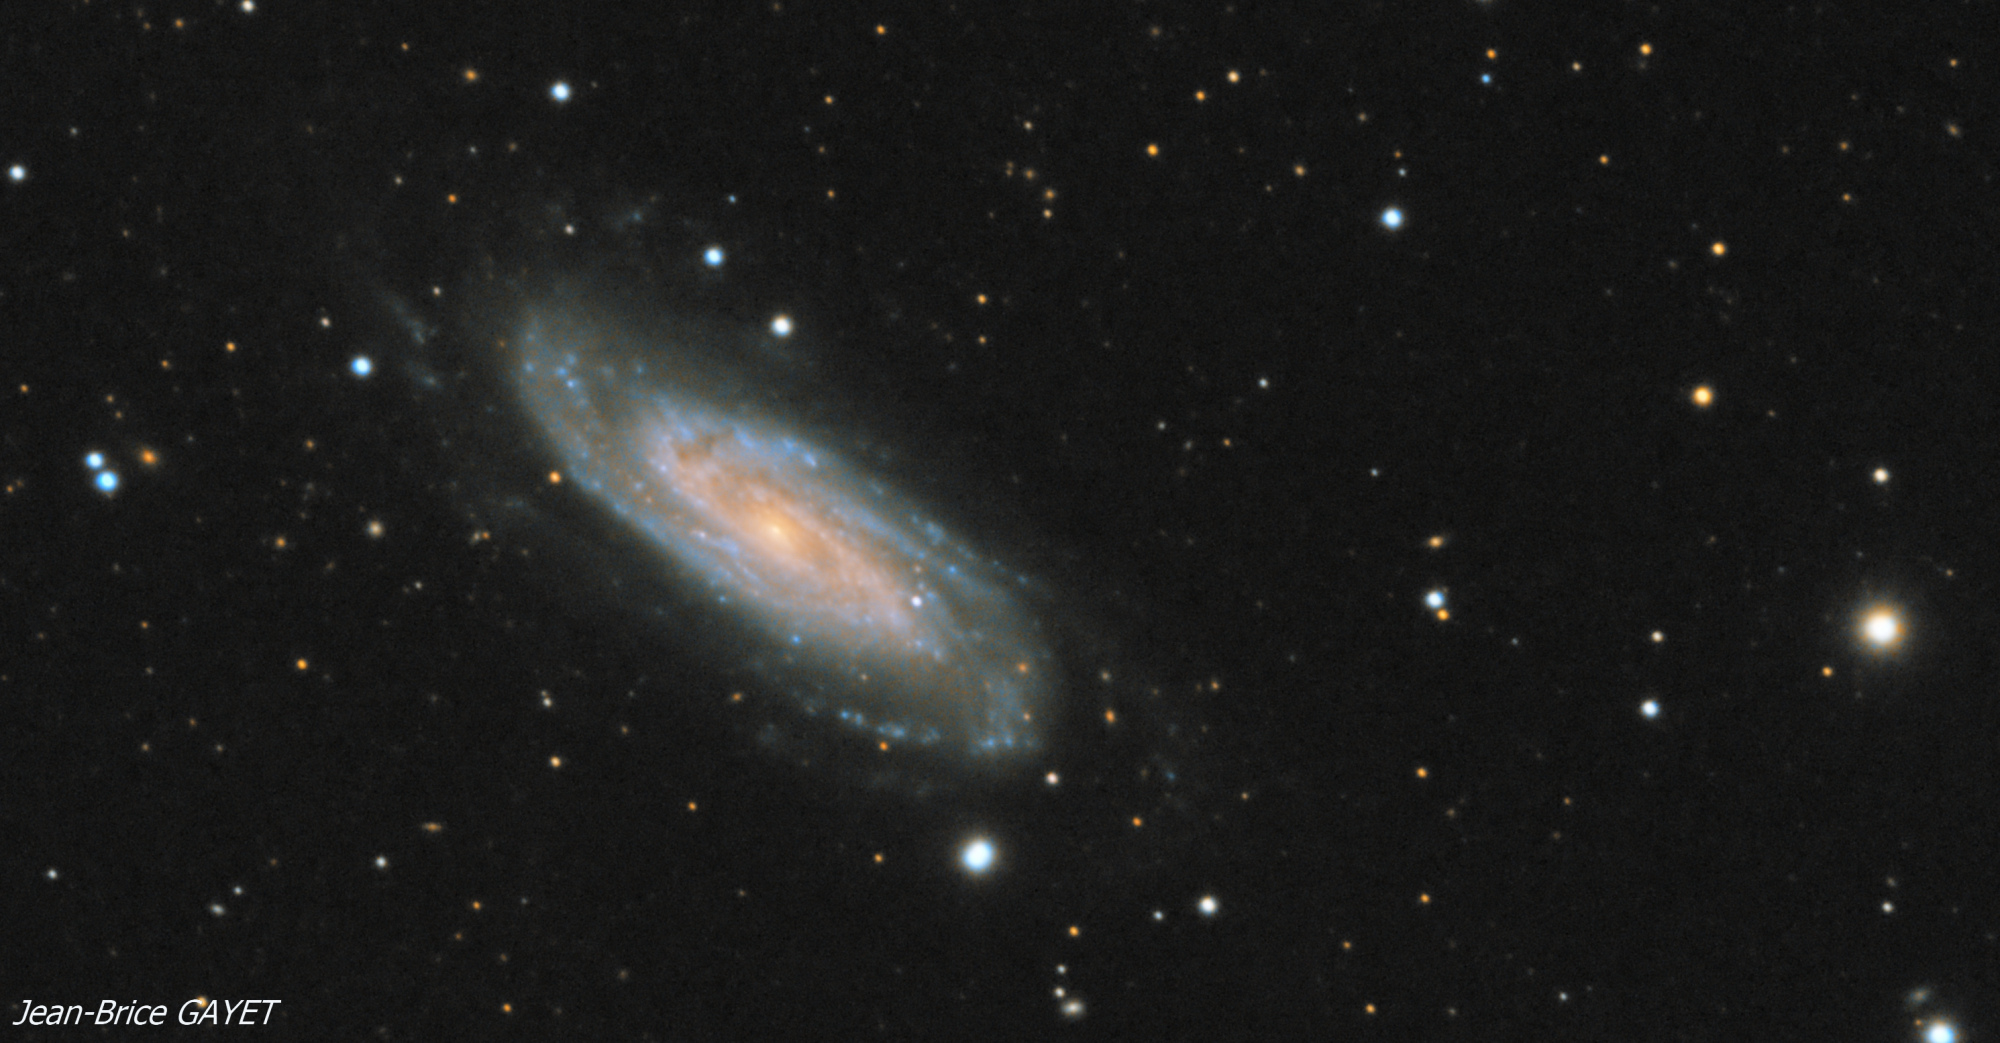 5c6a8f8a660c9_NGC3198crop.thumb.jpg.e1809c4376c71740a724ec9f4e8da377.jpg